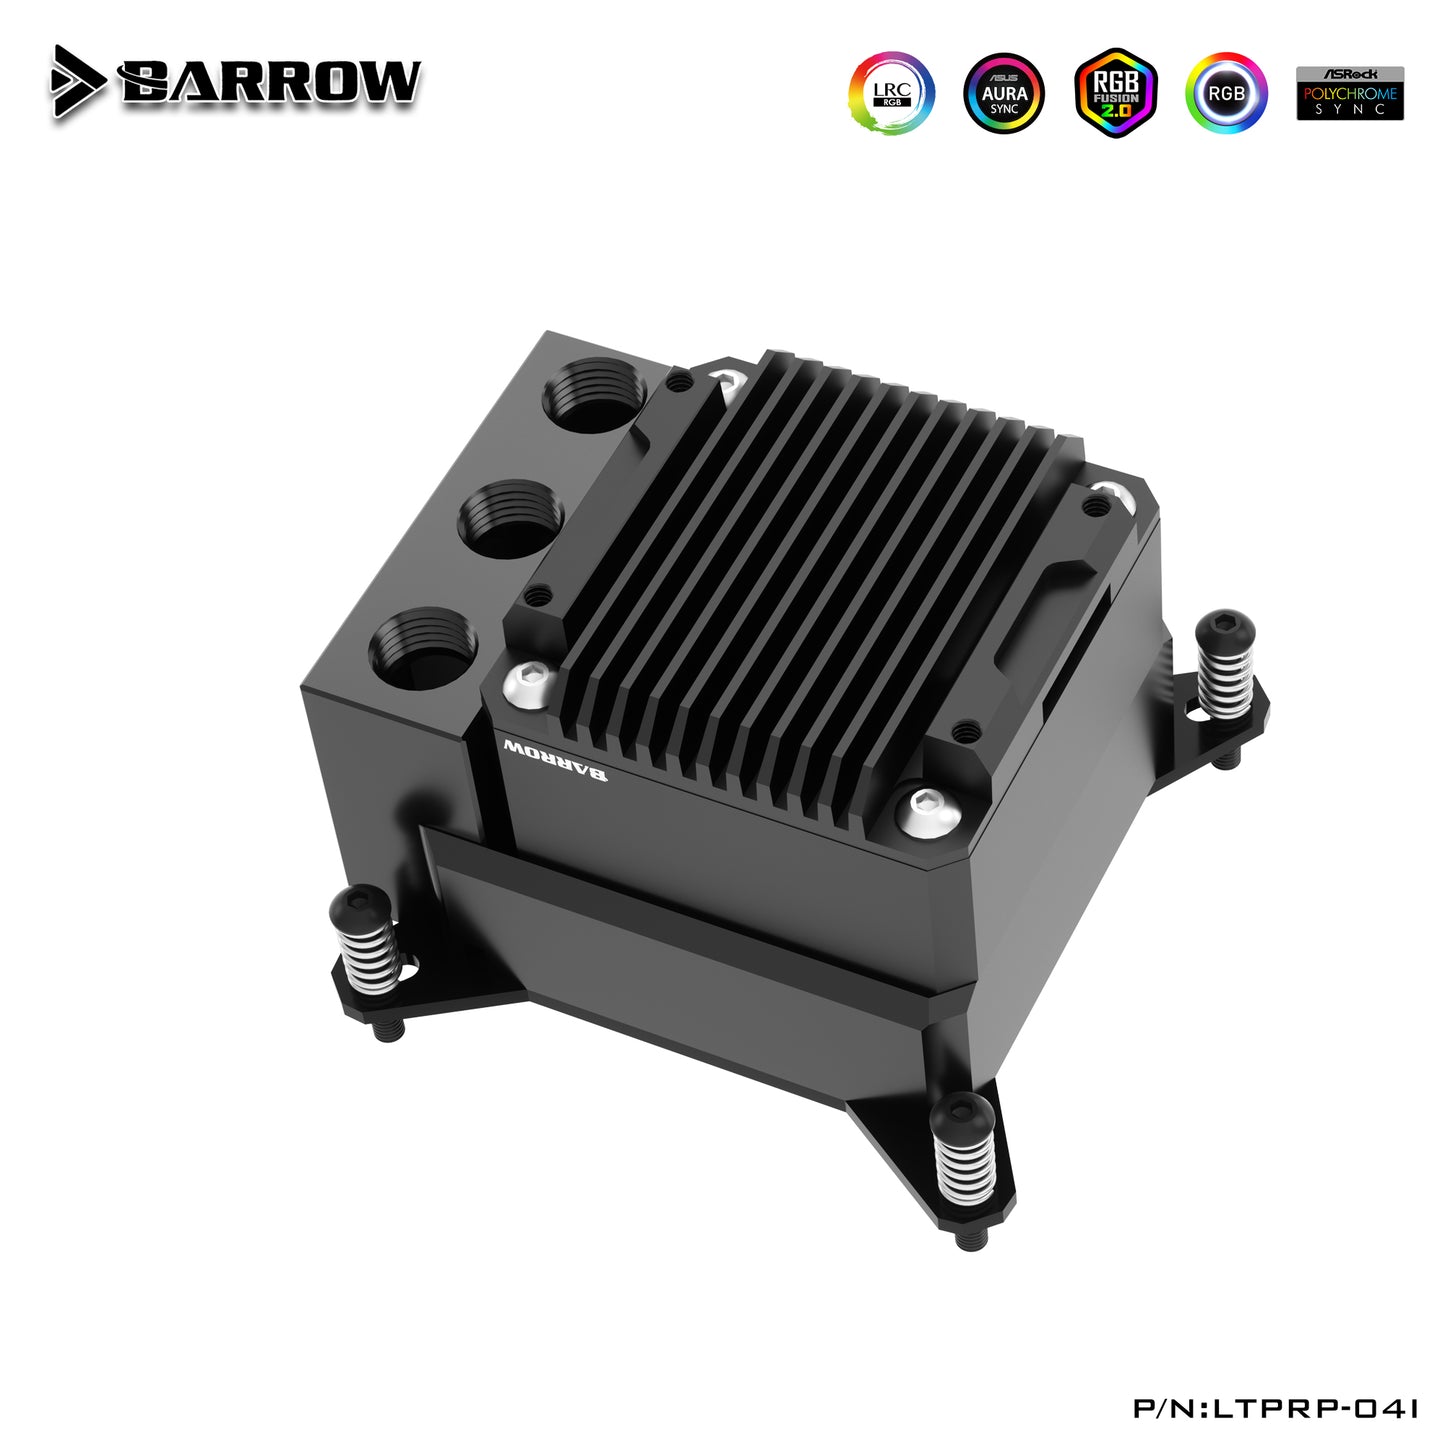 Plate-forme Barrow Intel/AMD POM/Acrylic CPU Water Block avec réservoir de pompe 10w Combo bloc-pompe tout-en-un intégré LTPRK-04 M LTPRKX-04 M LTPRPA-04 M 